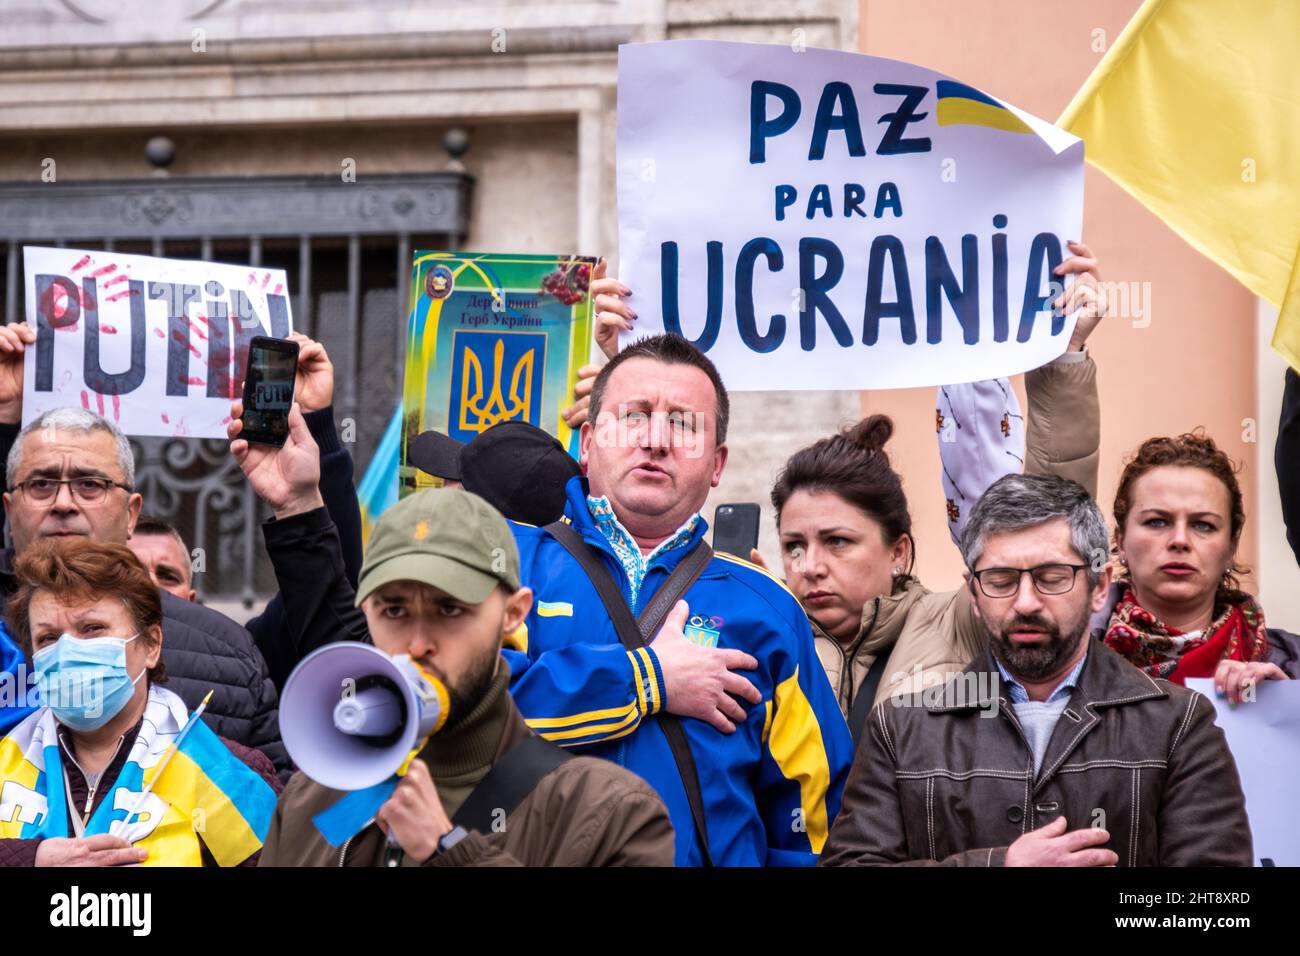 Valencia, Spagna; 27th Feb 2022: I manifestanti protestano contro la guerra durante una manifestazione contro l'invasione russa dell'Ucraina. Credit: Media+Media/Alamy Live News Foto Stock